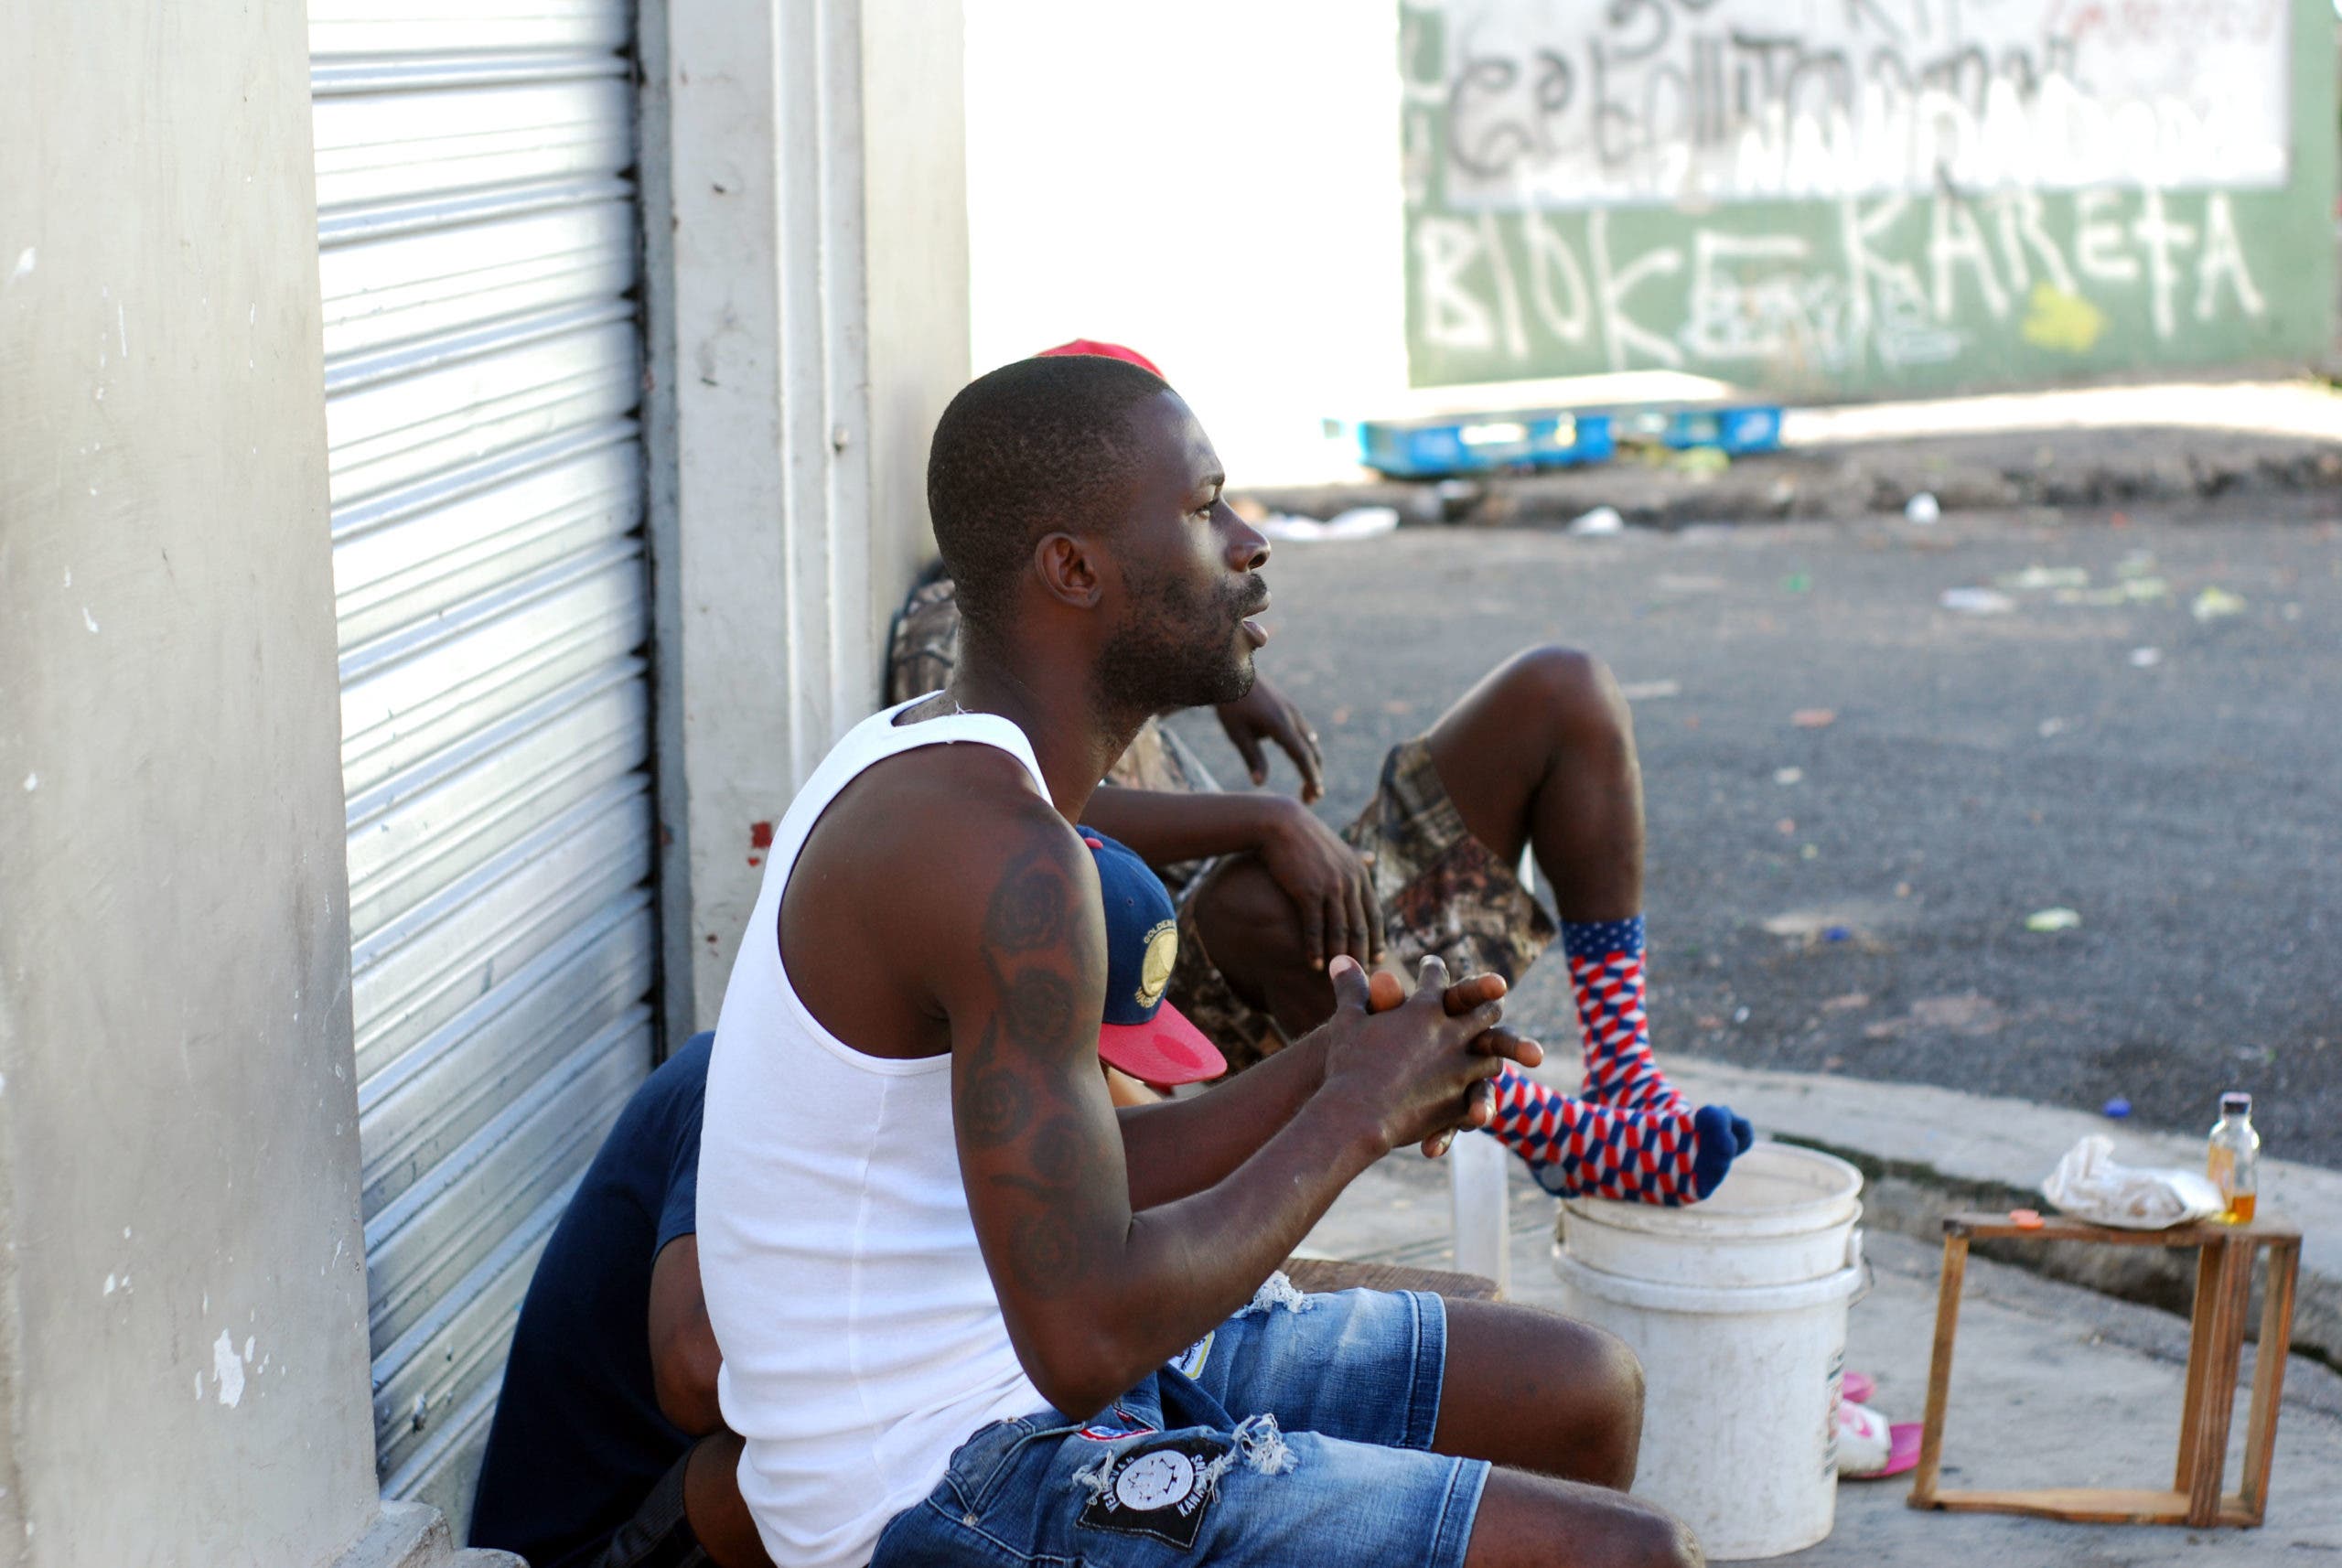 “Si se camina por la ley no hay ningún problema” dicen haitianos legales